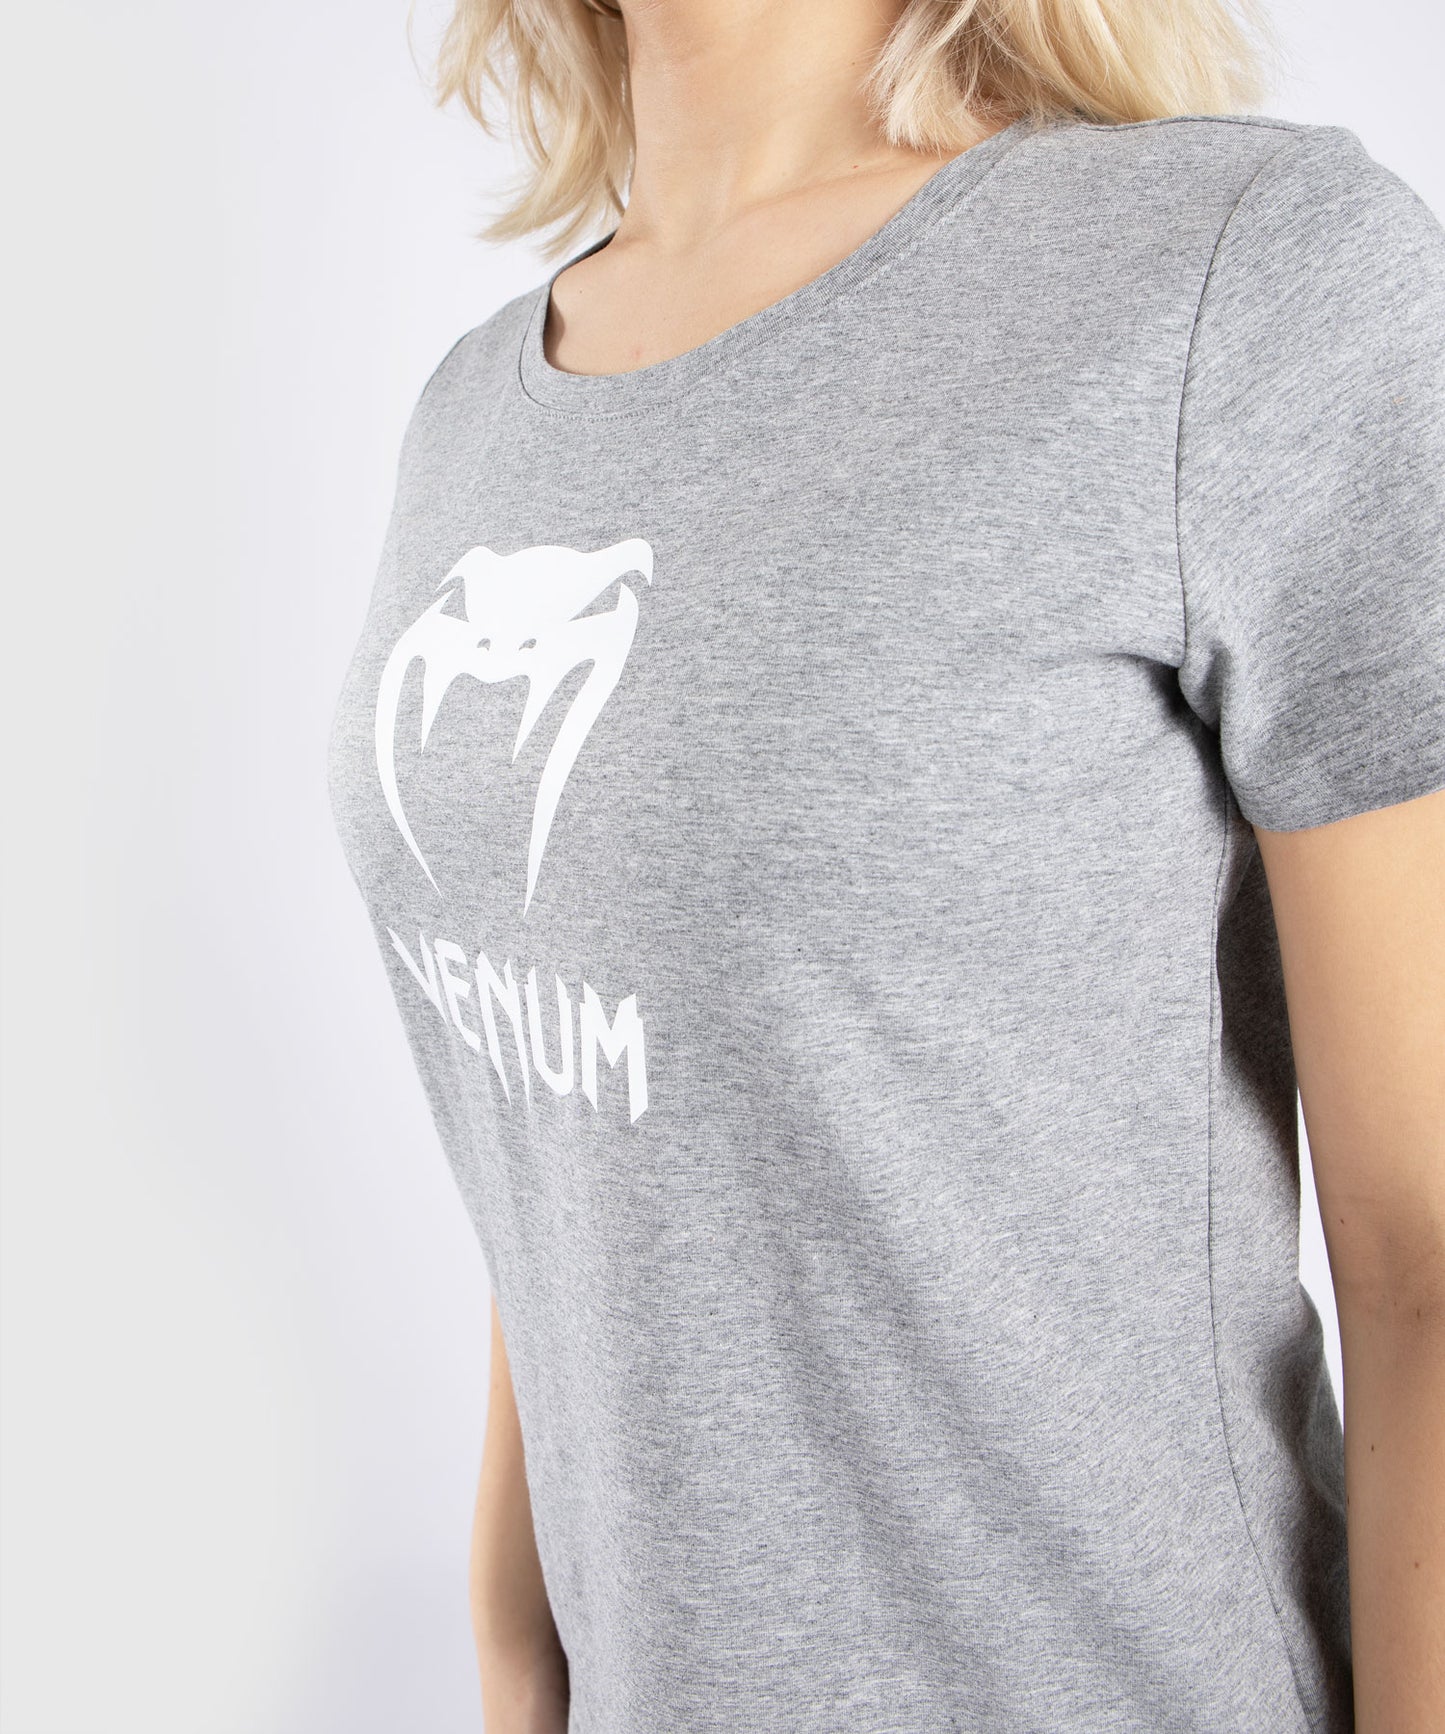 Camiseta Venum Classic - De Mujer - Gris jaspeado claro